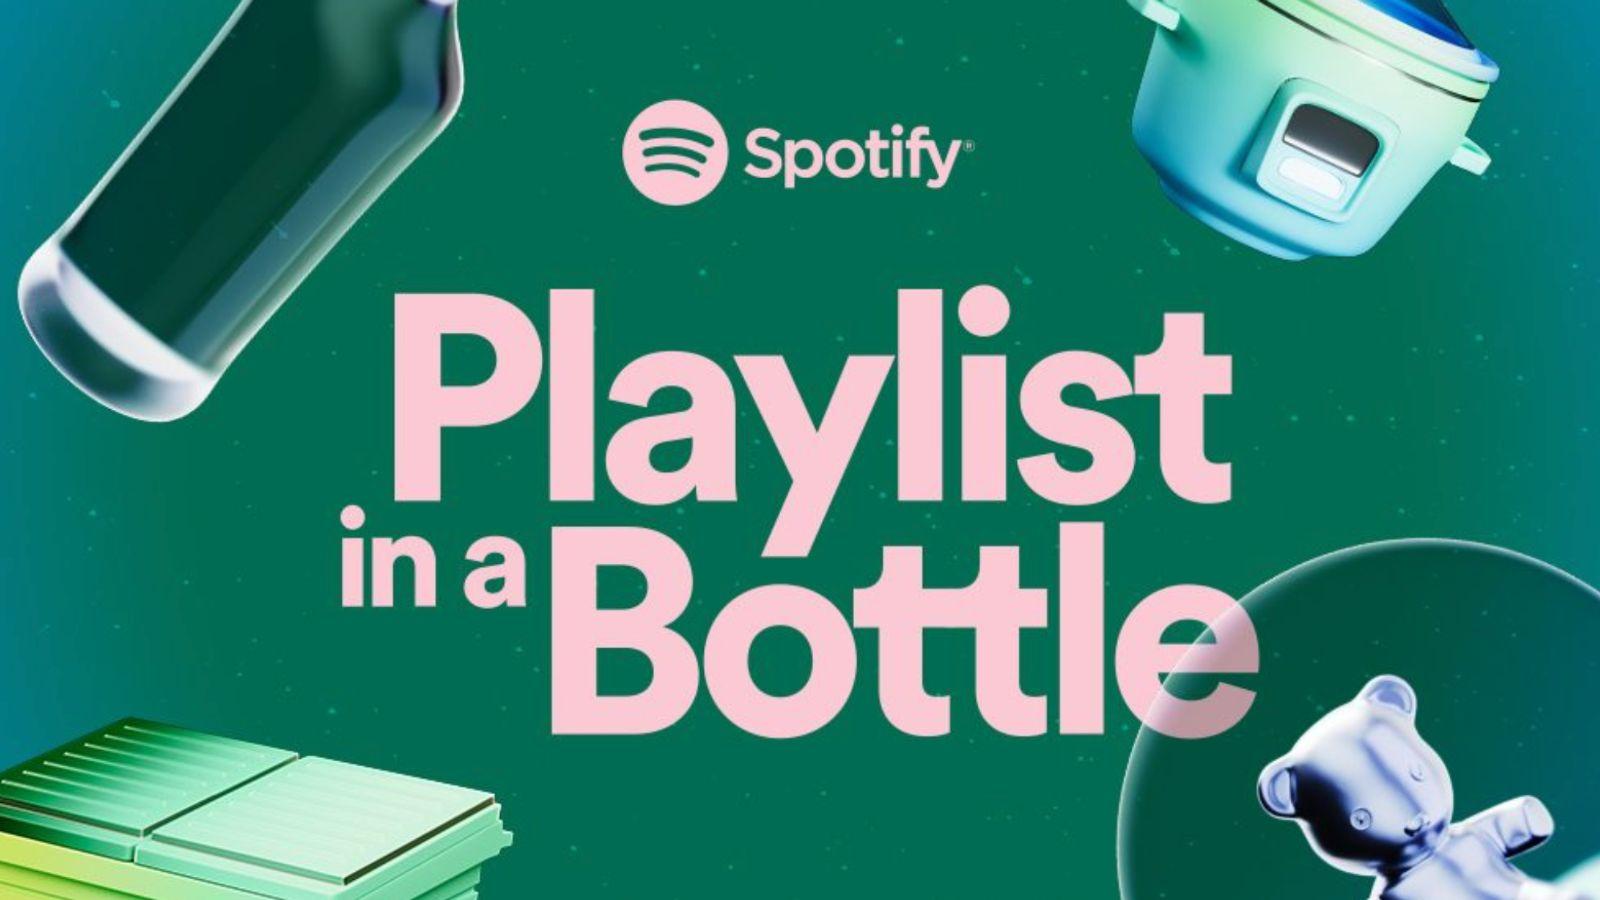 What is Spotify Playlist in a Bottle?